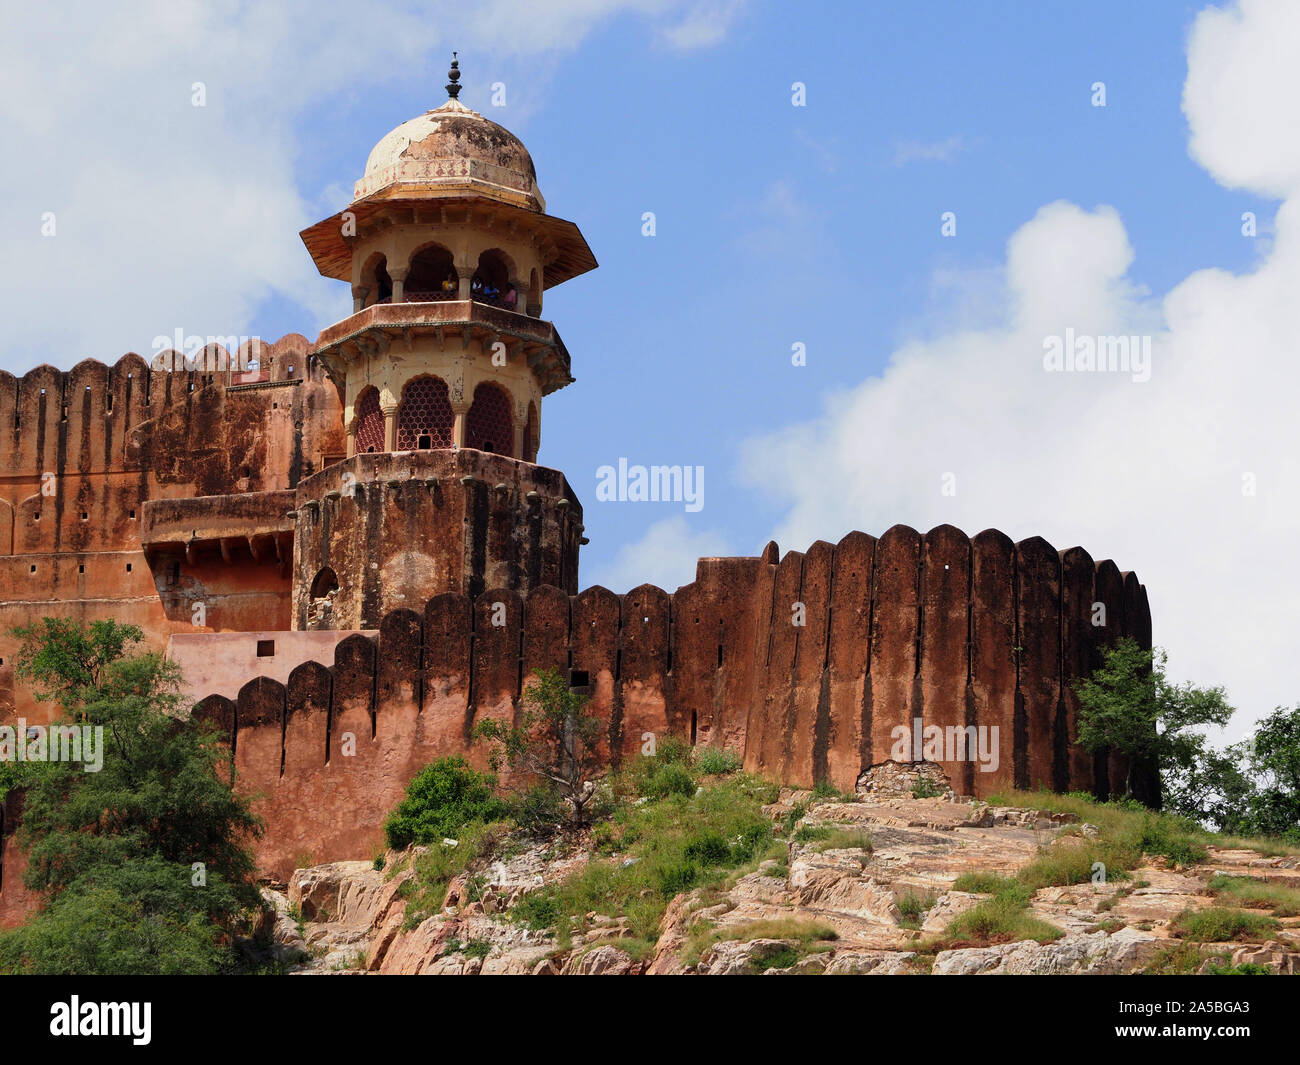 Vista desde el complejo del Palacio fortaleza de Amber, Jaipur, Rajasthan, India Foto de stock